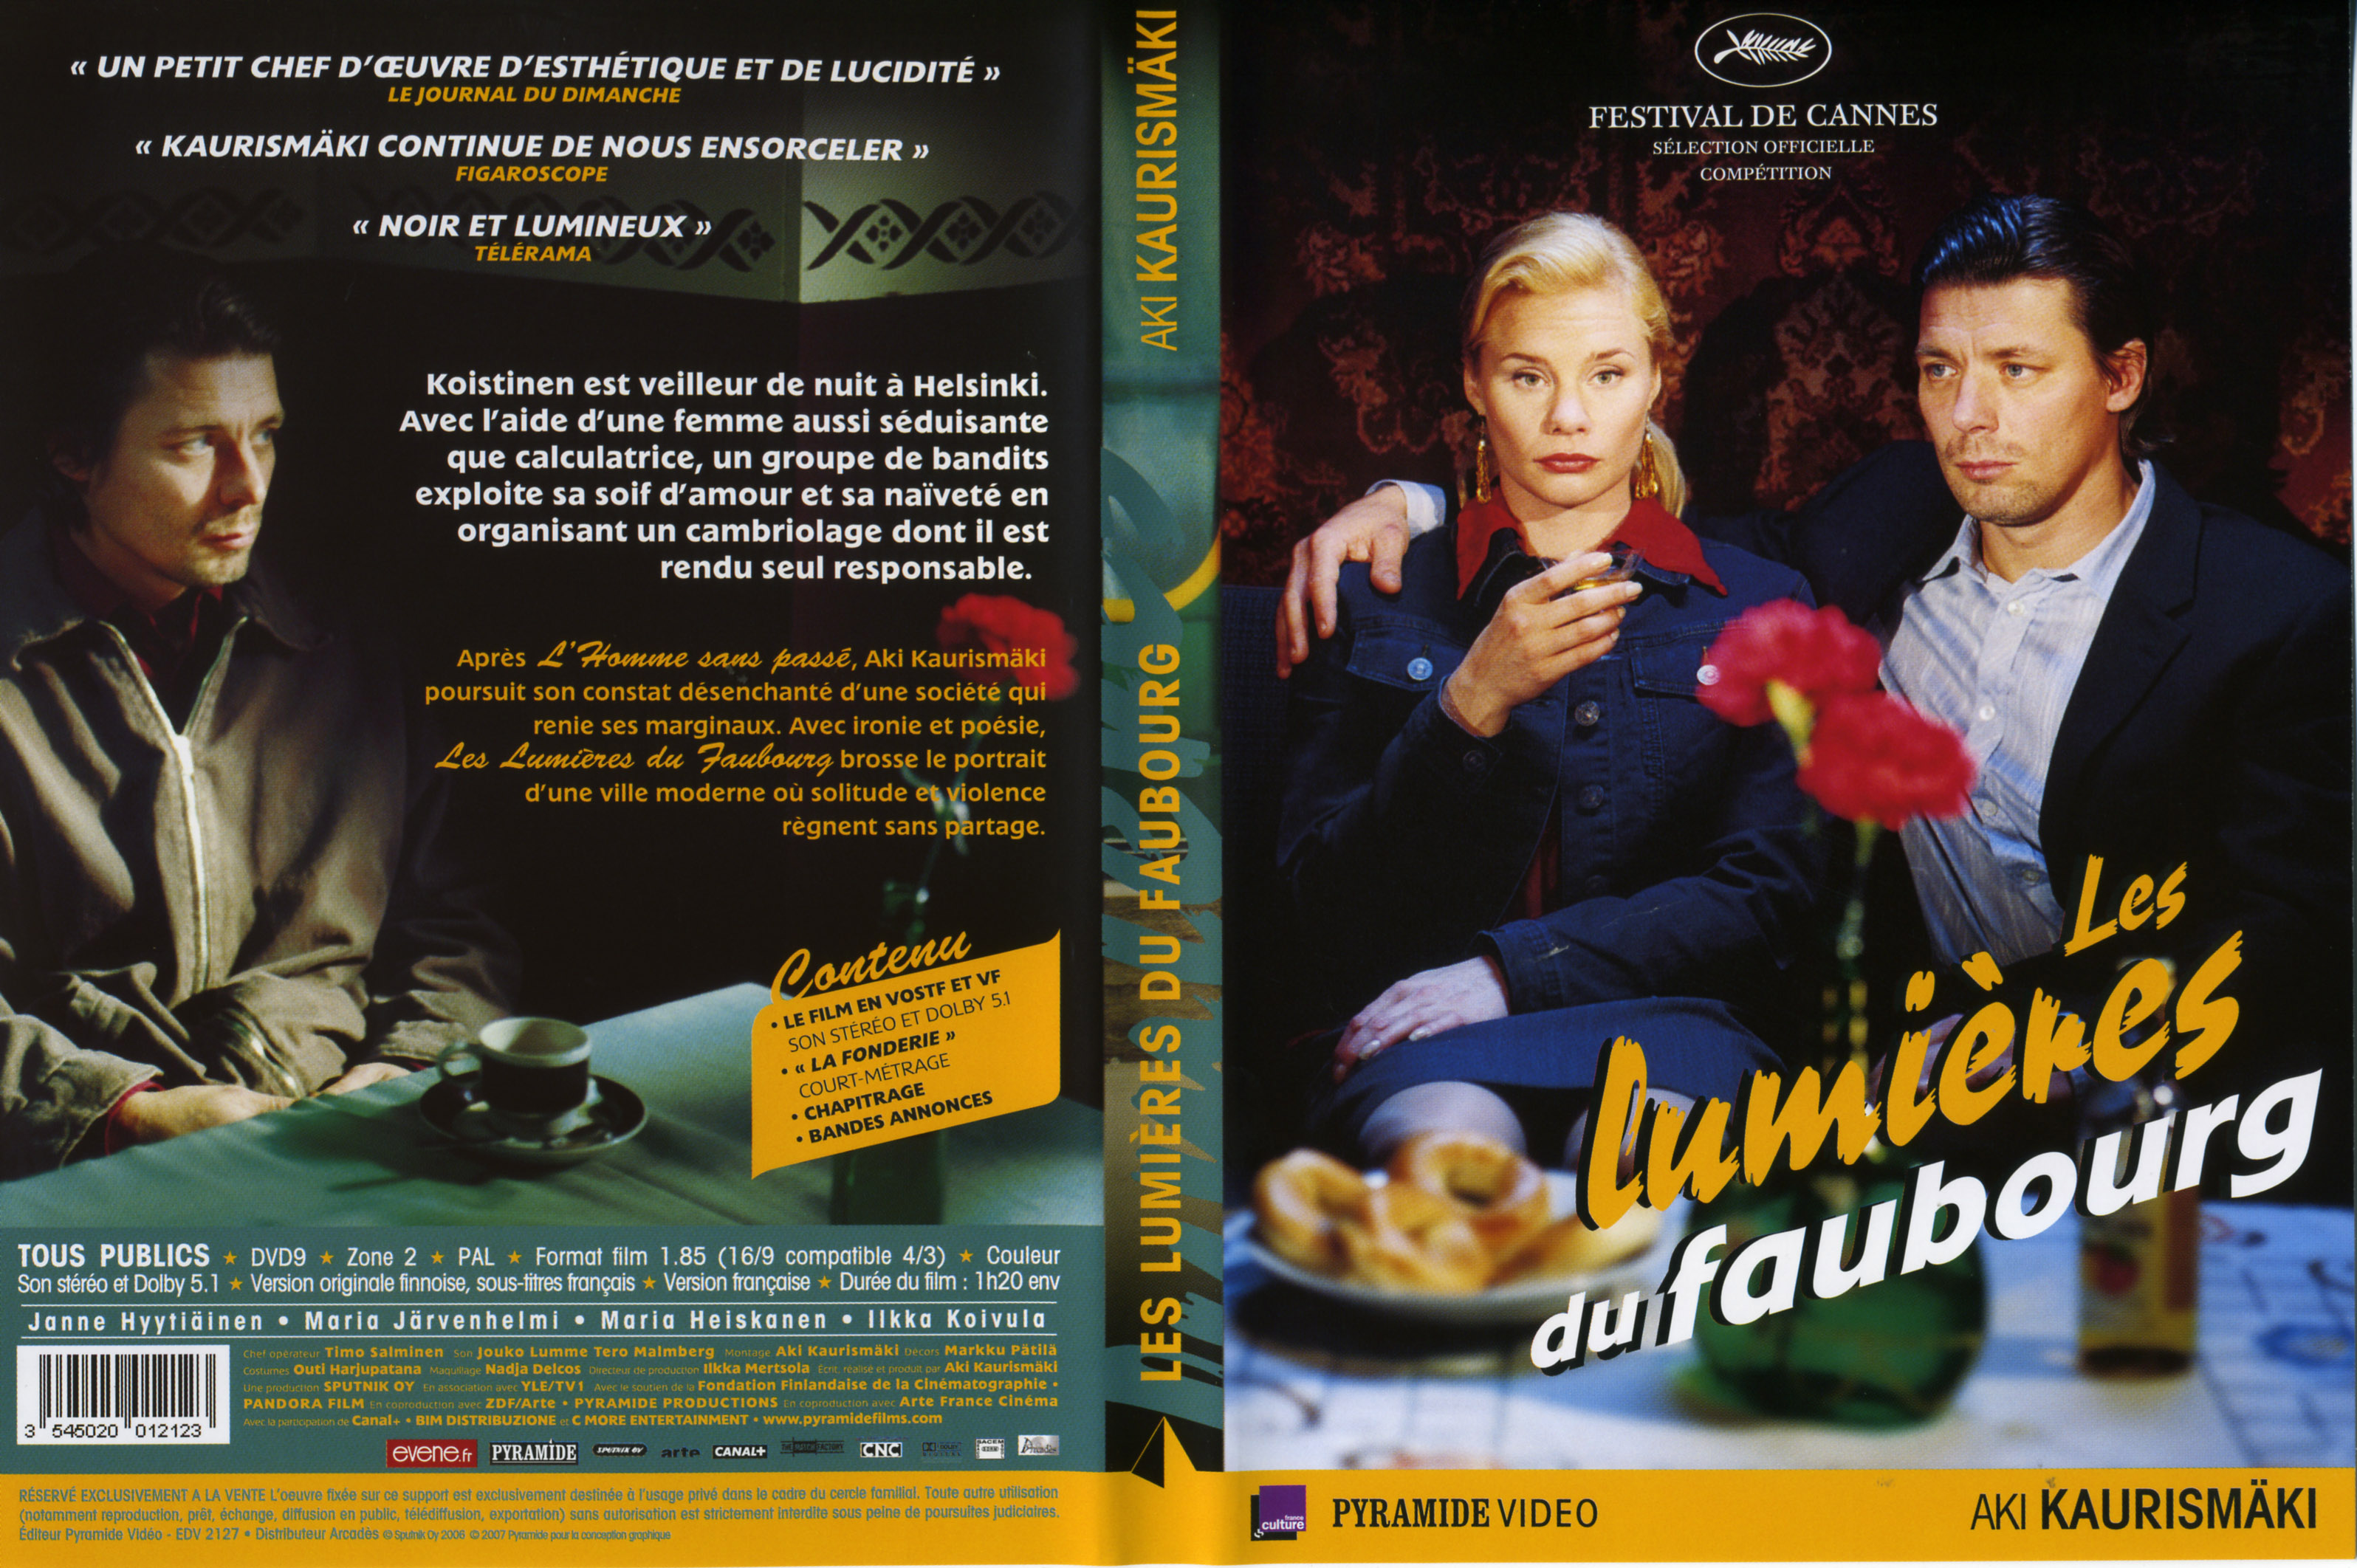 Jaquette DVD Les Lumires du faubourg